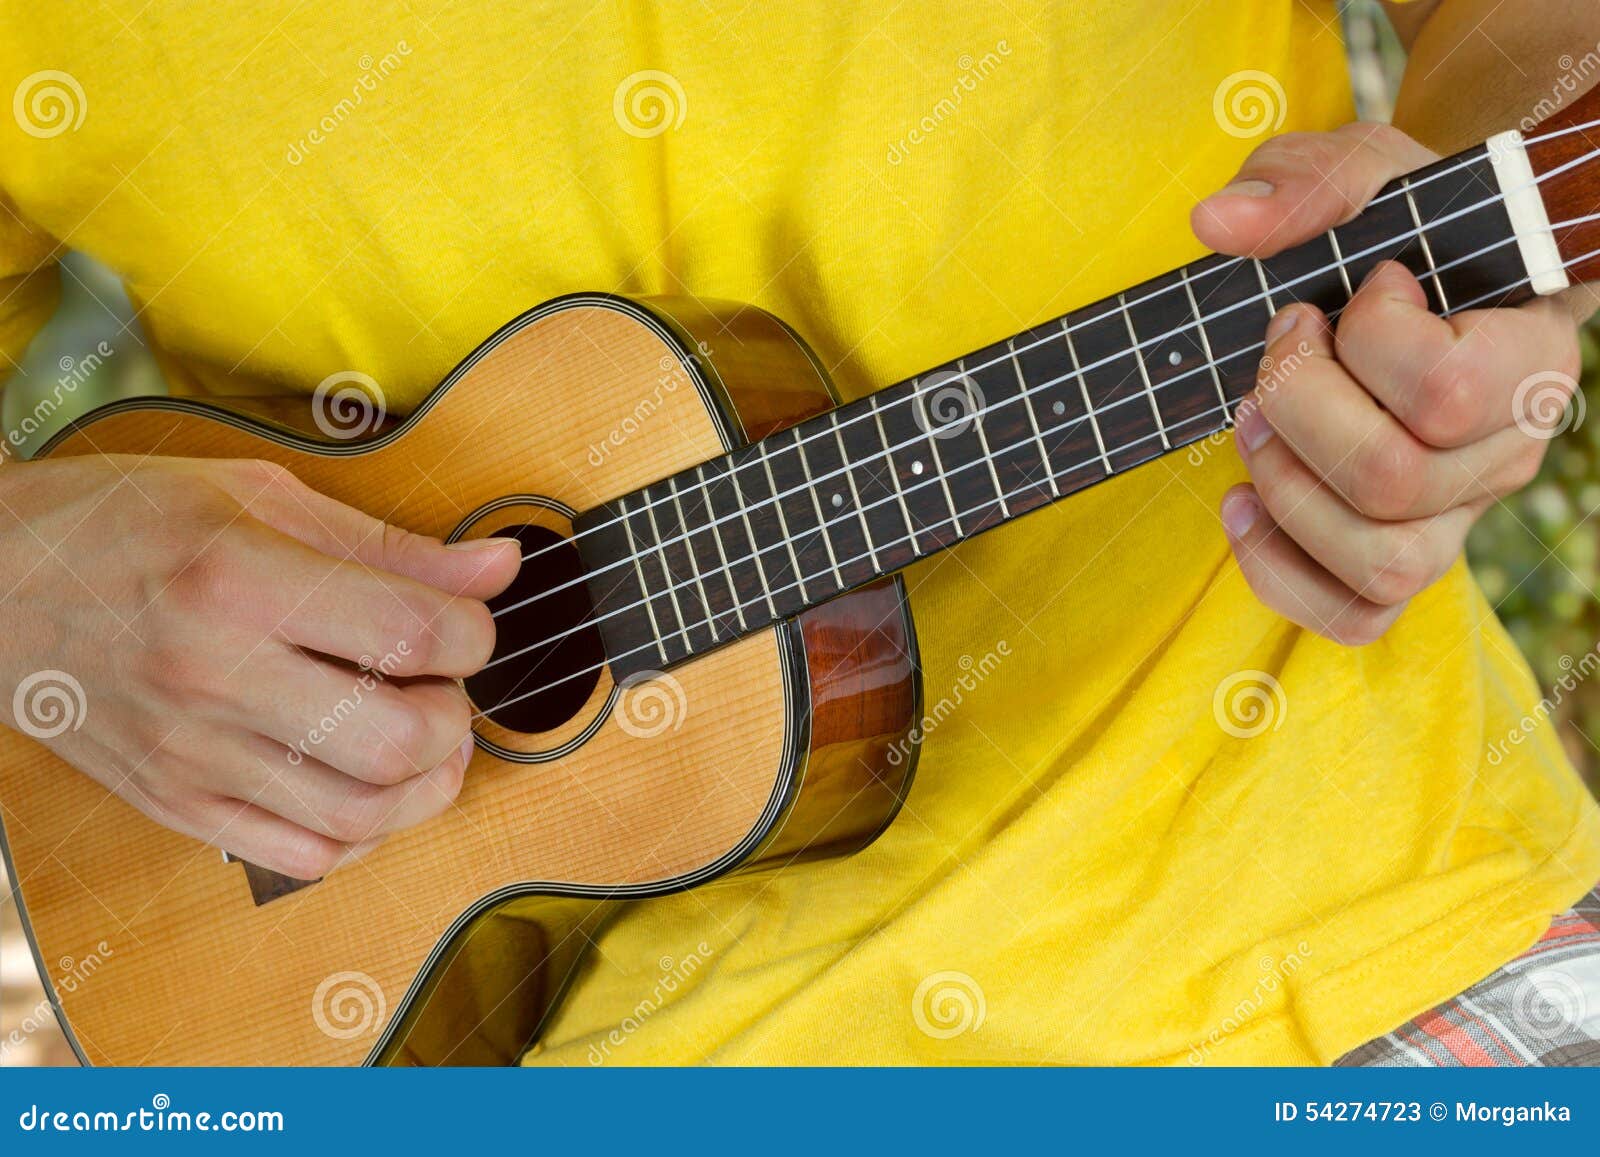 man's hands playing ukulele